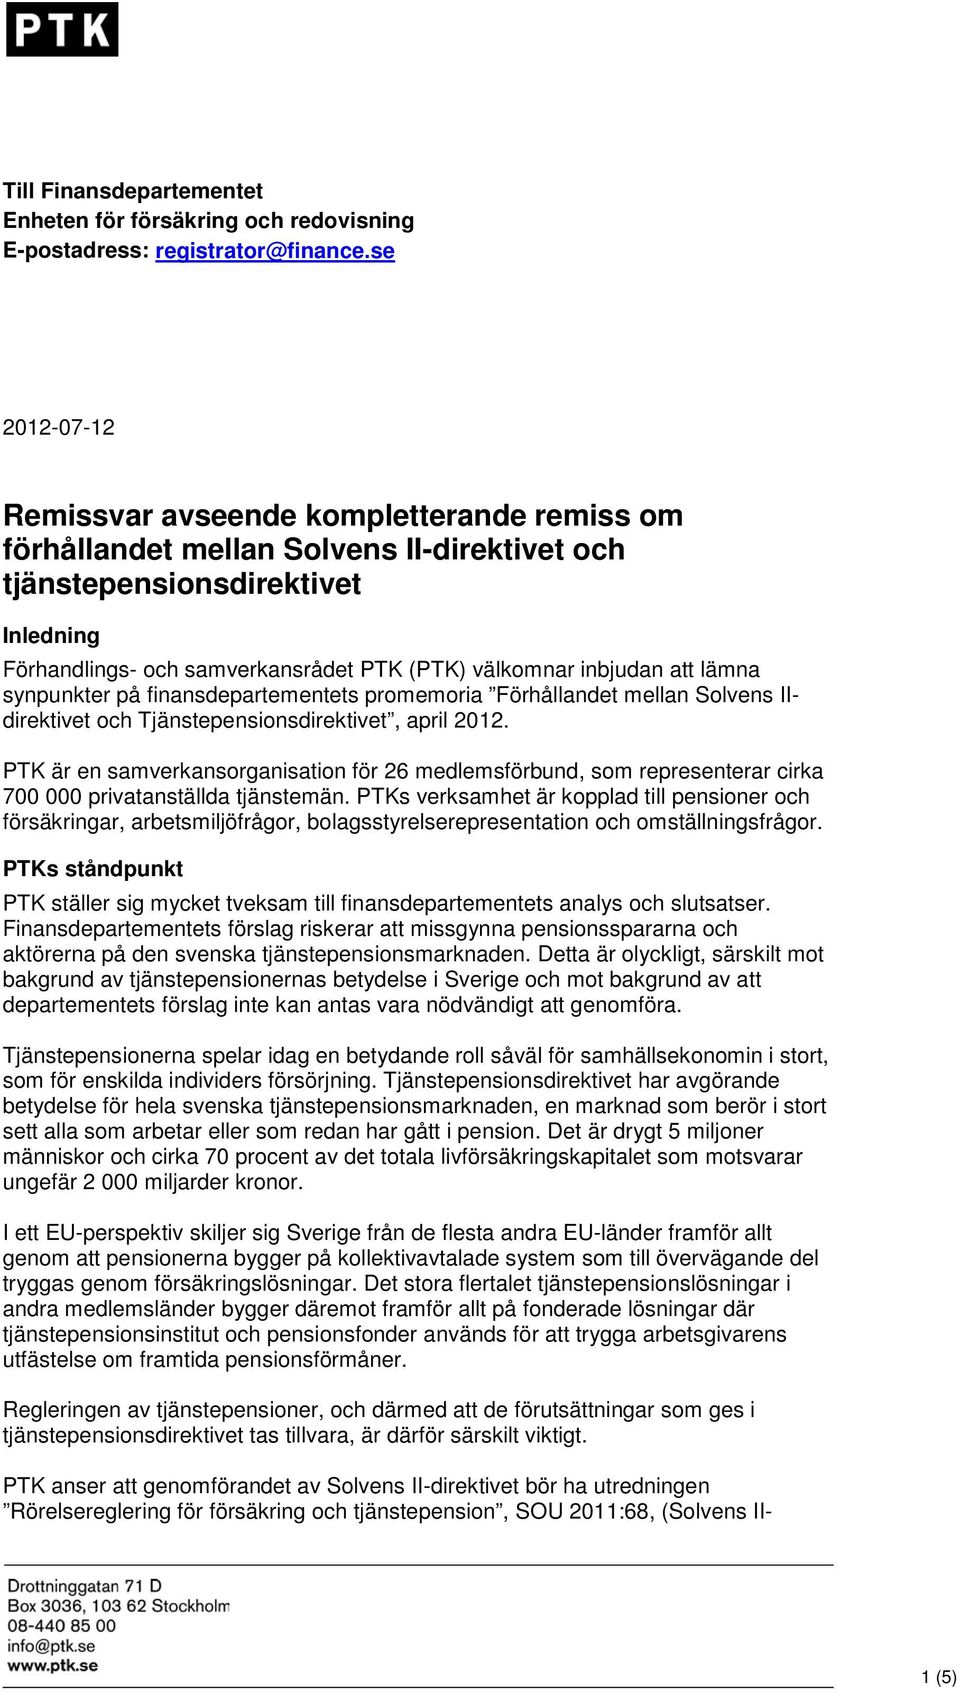 inbjudan att lämna synpunkter på finansdepartementets promemoria Förhållandet mellan Solvens IIdirektivet och Tjänstepensionsdirektivet, april 2012.